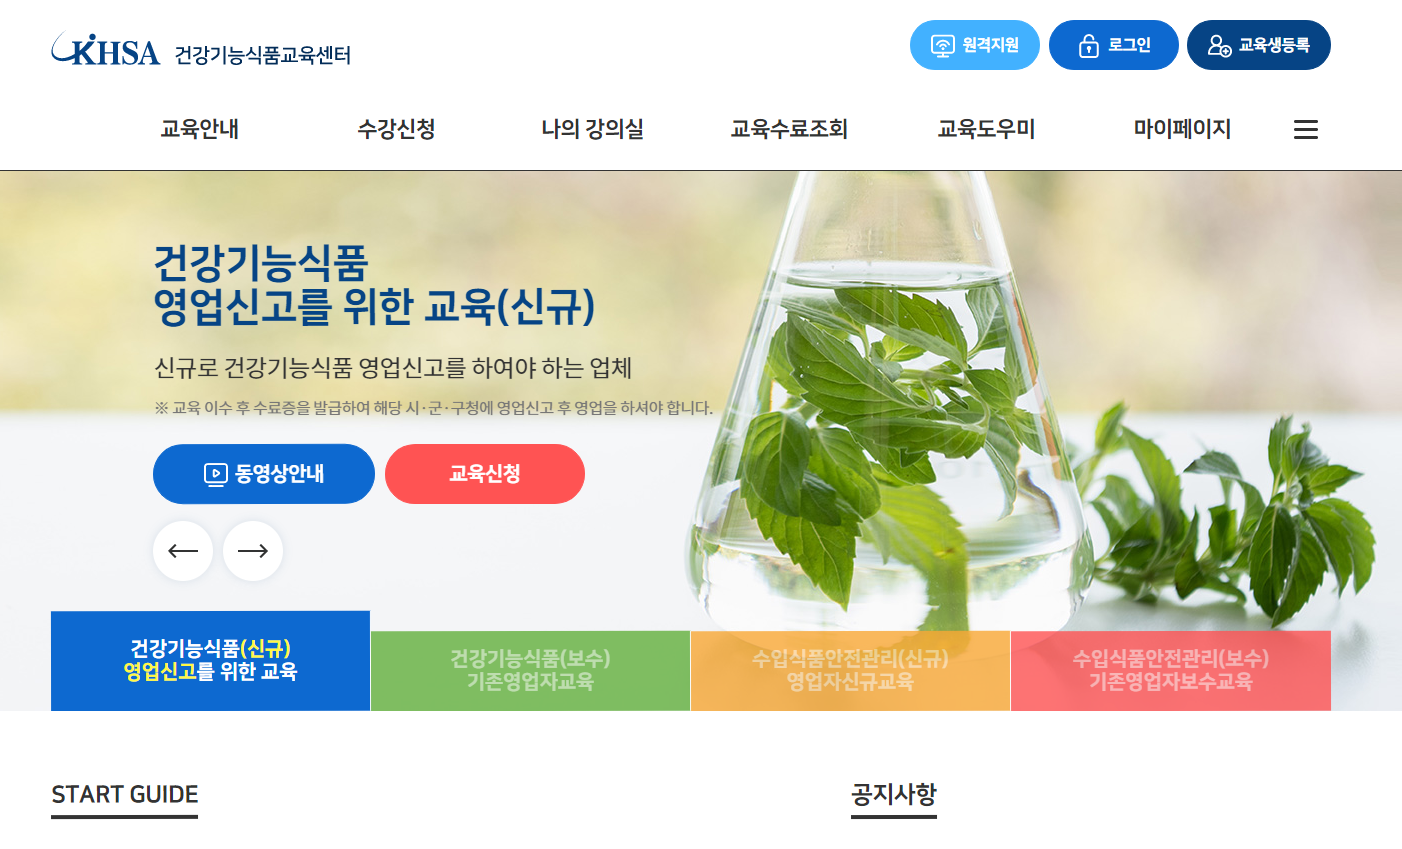 한국건강기능 식품협회 (건강기능식품 협회)